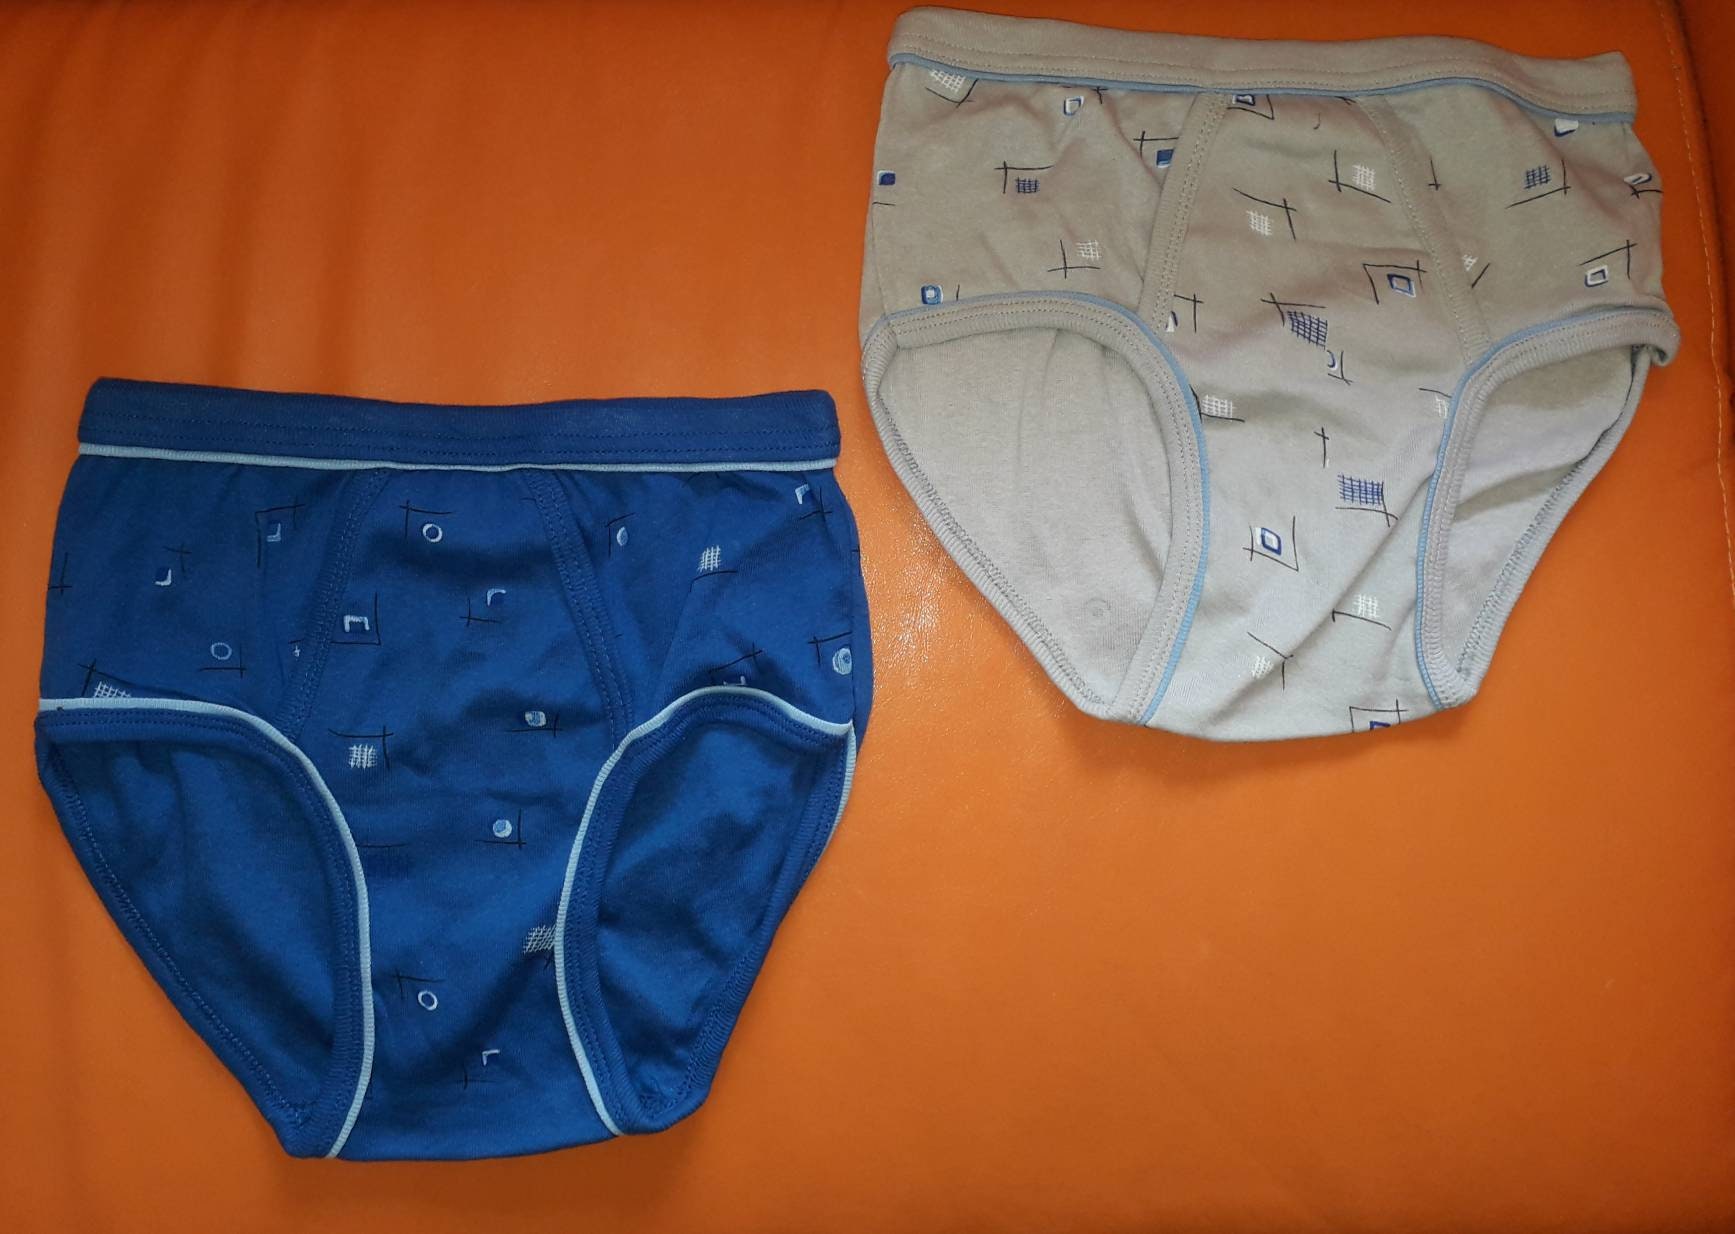 Unworn Vintage Men's Underwear 2 Pair 1980s Colored Geo Patterned ...